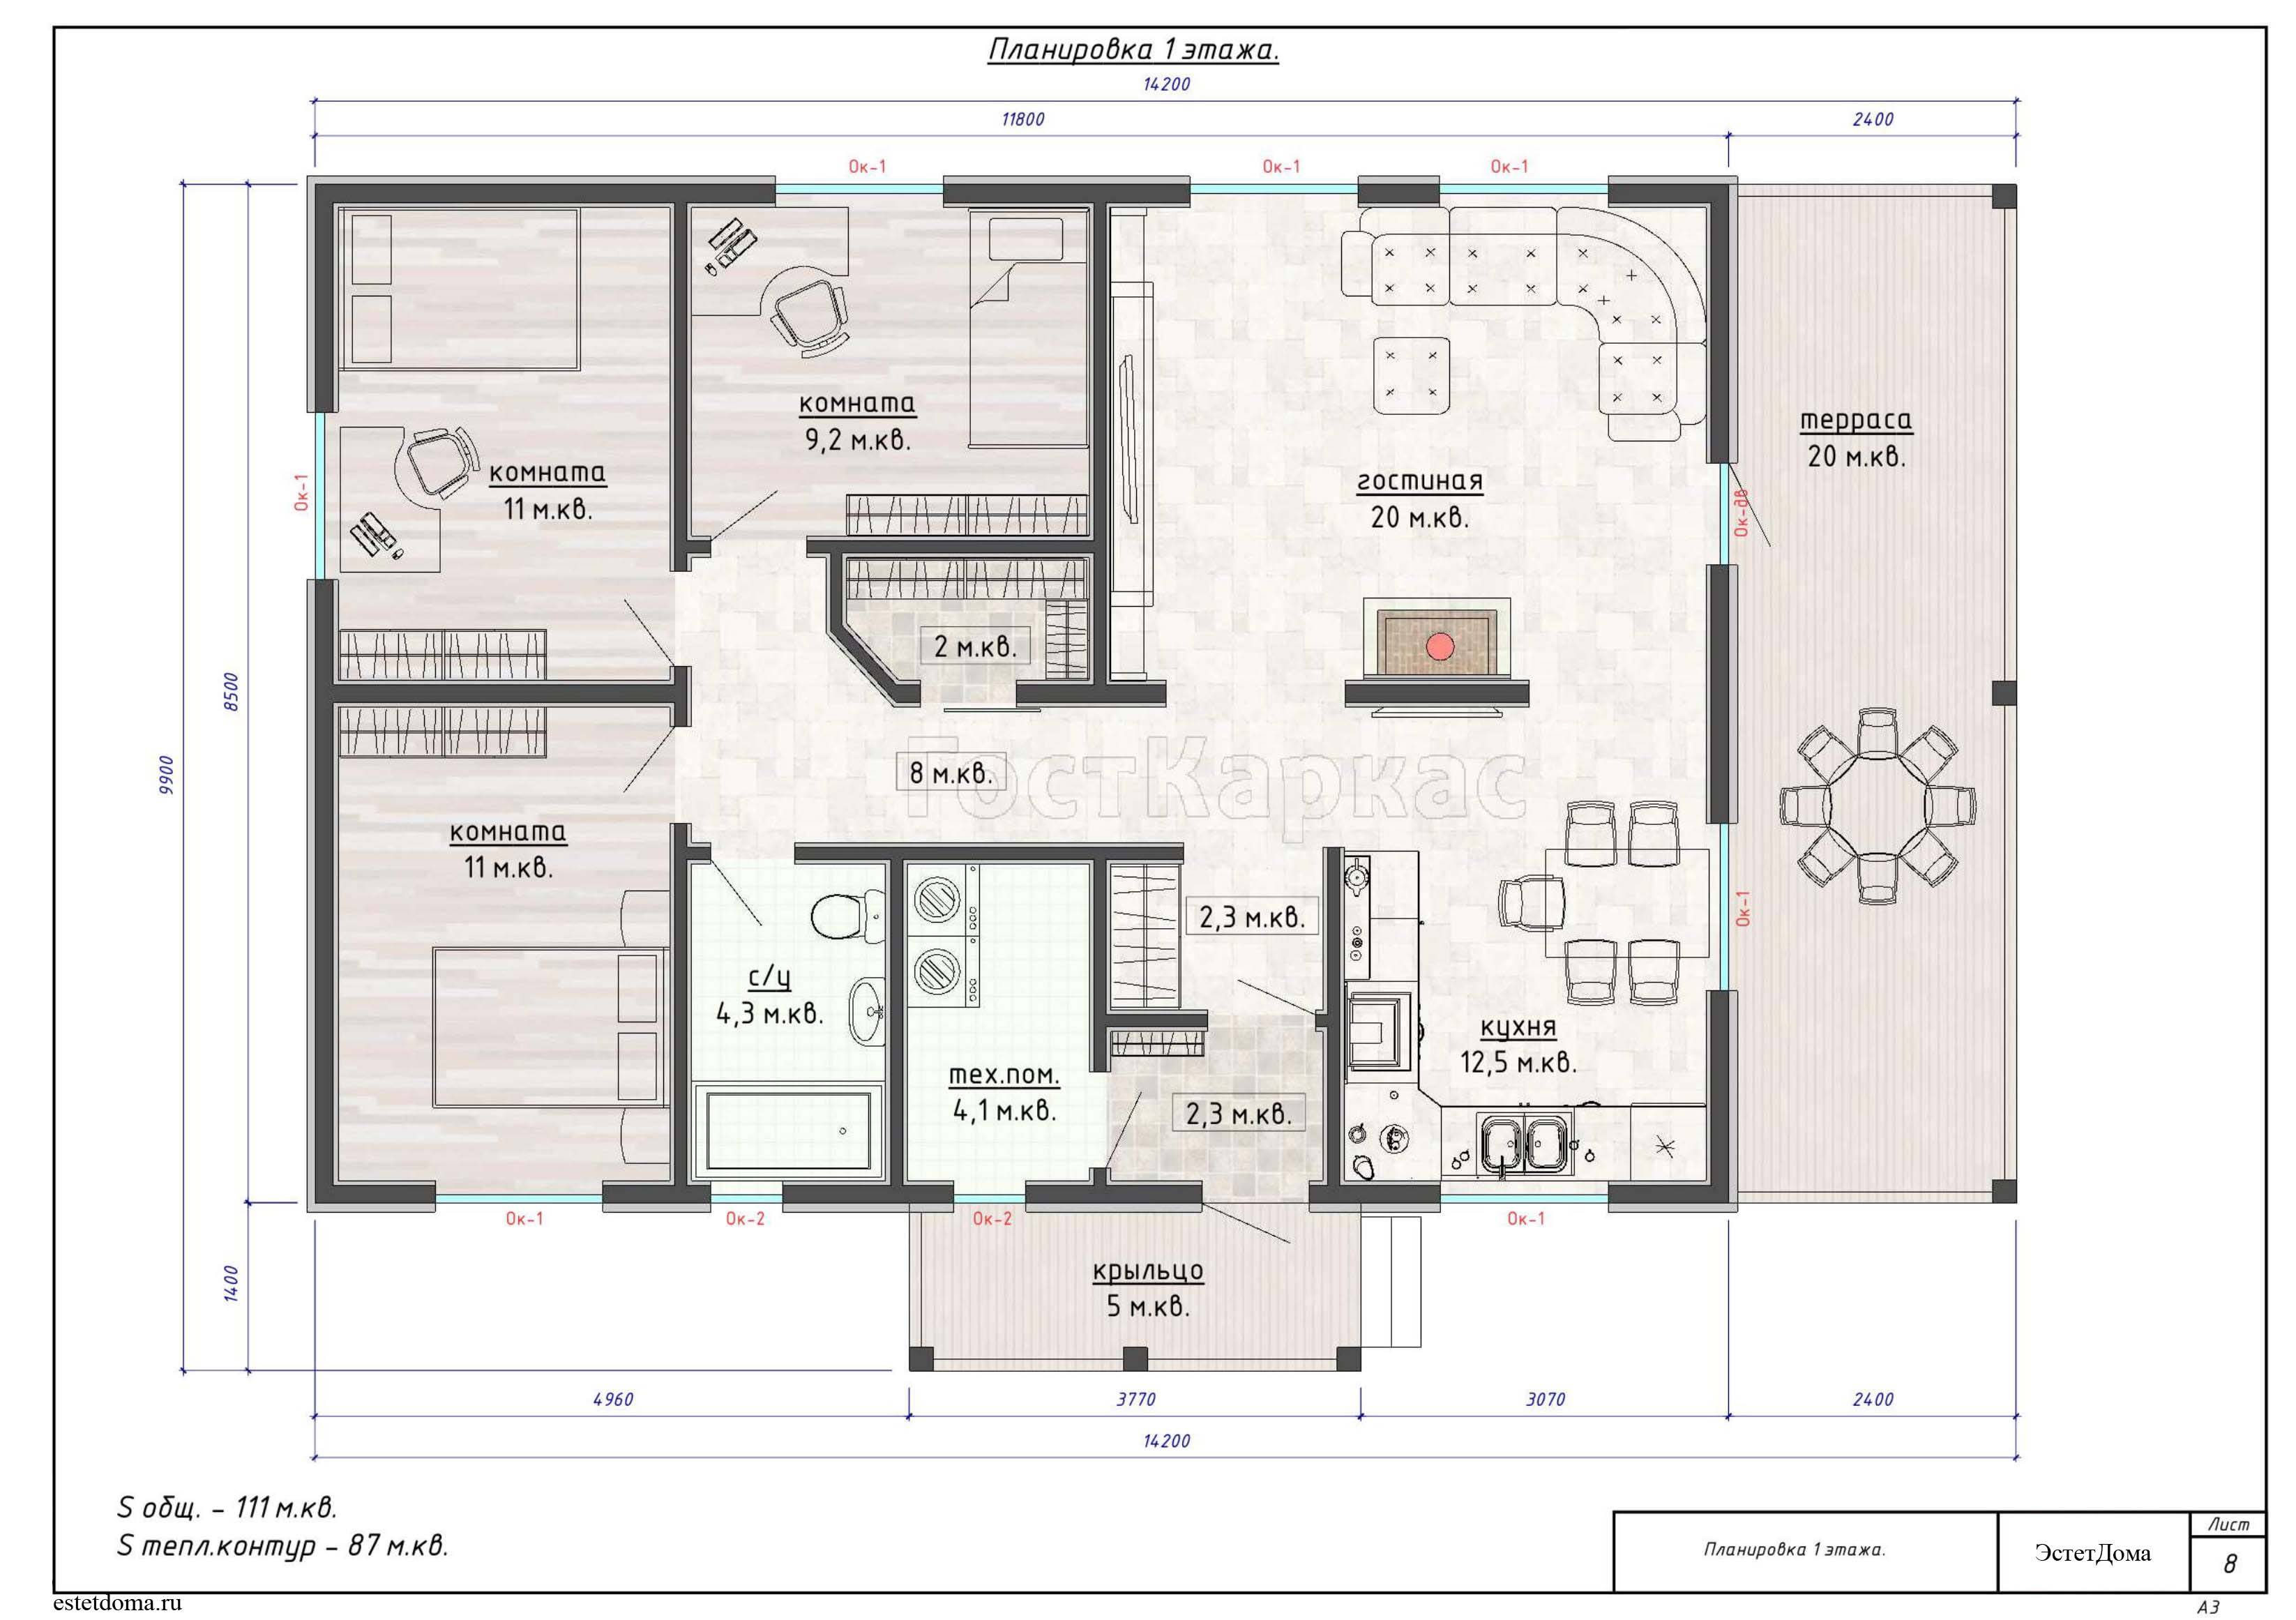 Планировка одноэтажного дома 12 на 12 с тремя спальнями: различные варианты проектов